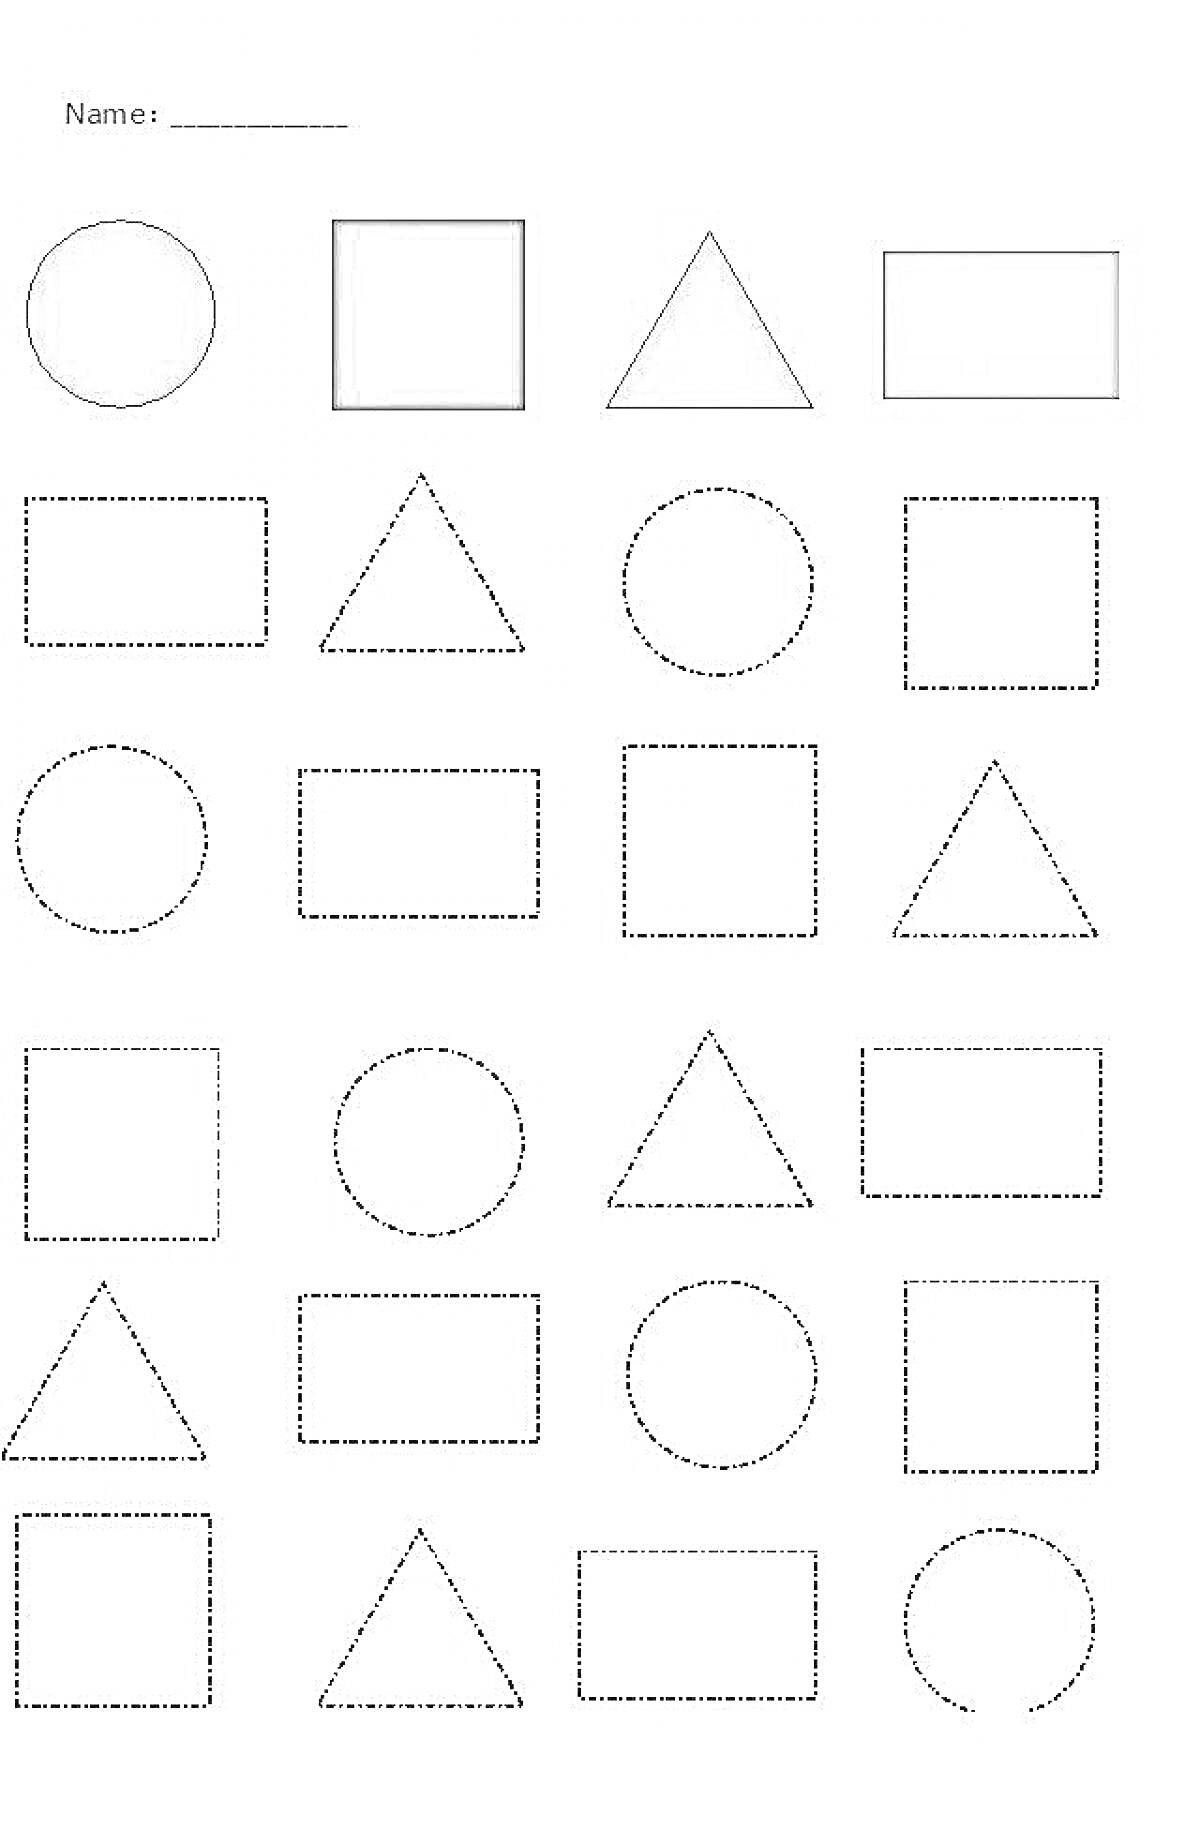 Раскраска раскраска с геометрическими фигурами - круг, квадрат, треугольник, прямоугольник